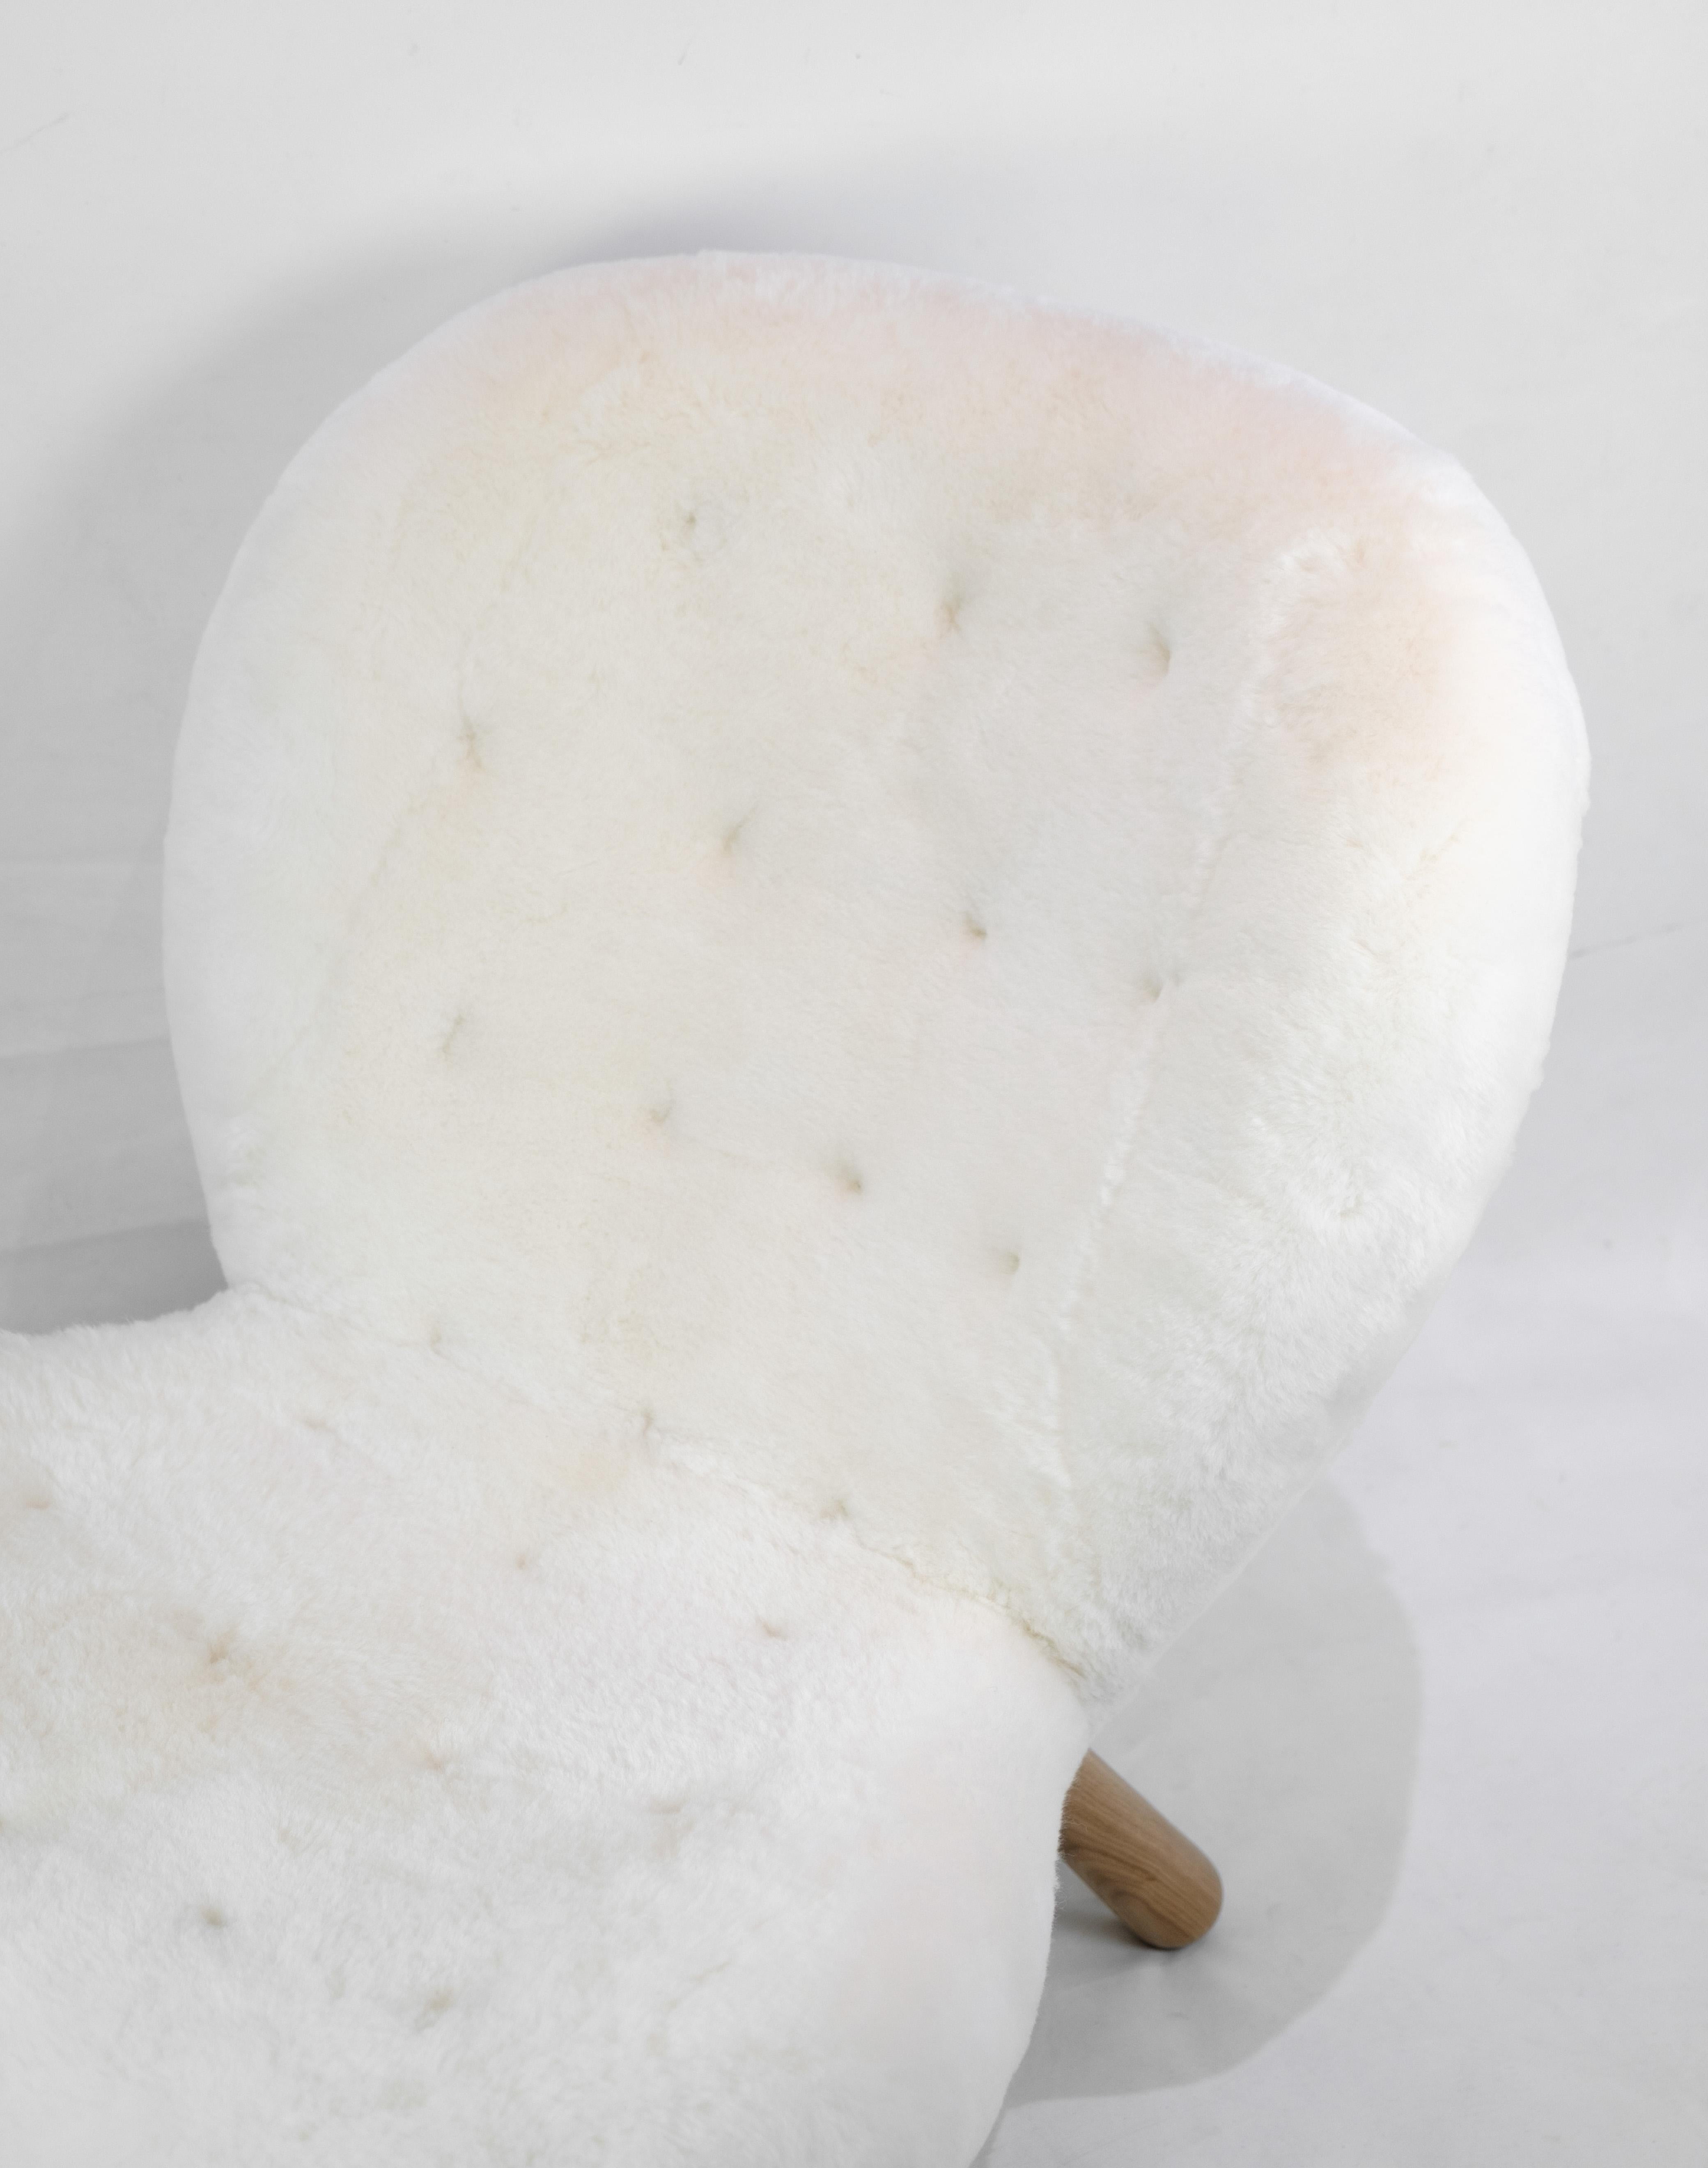 La chaise Arctander, affectueusement connue sous le nom de (la chaise à palourdes), conçue par Philips Arctander et recouverte d'une luxueuse peau de mouton. Cette chaise longue est réputée pour sa qualité supérieure et son assise incroyablement